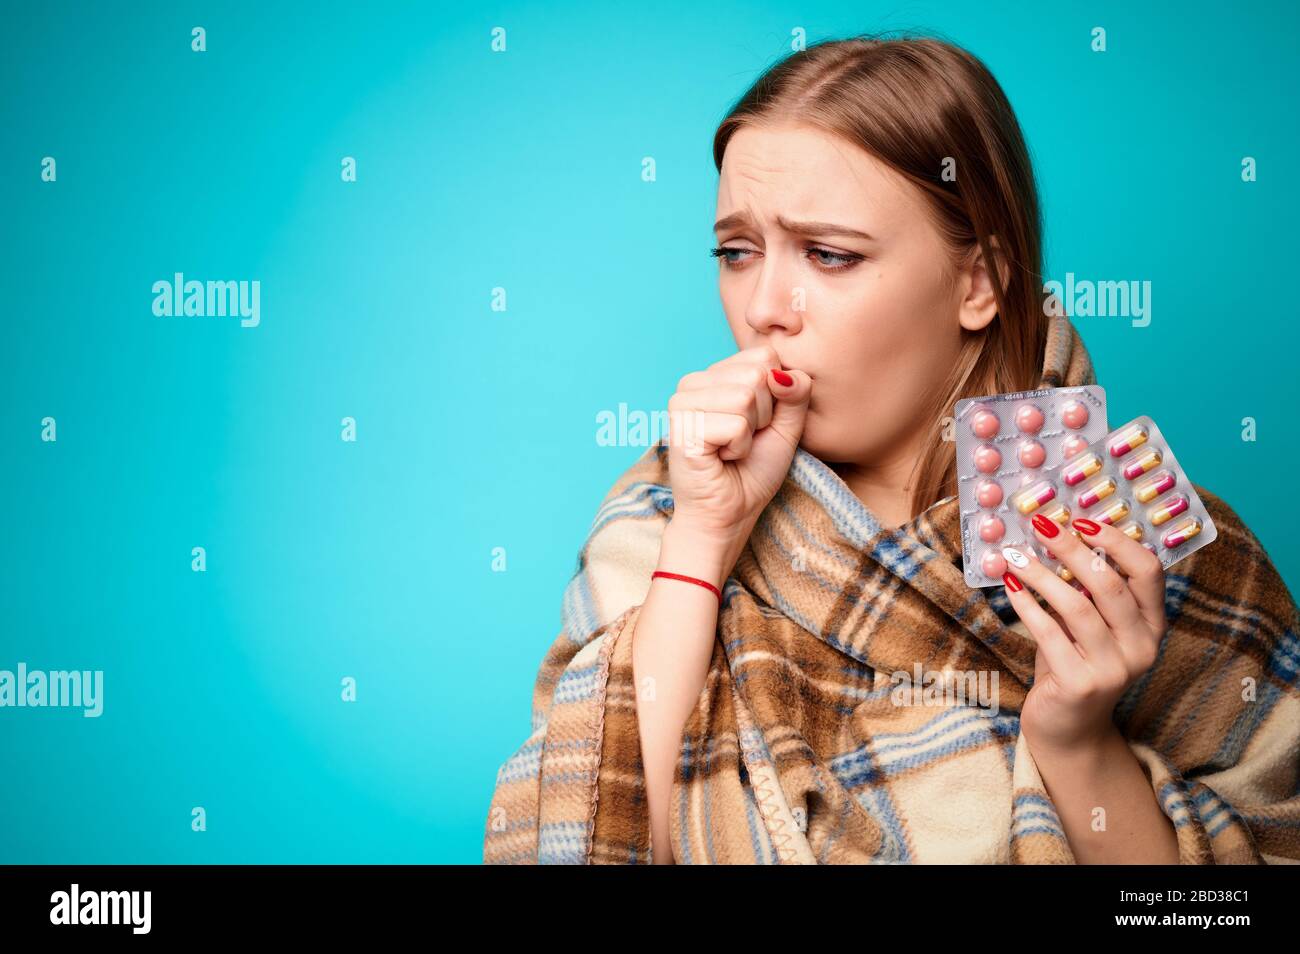 Frau mit einem Virus hustet und hält Pillen in ihren Händen, die in eine Pflauge eingewickelt sind. Blauer Hintergrund Stockfoto